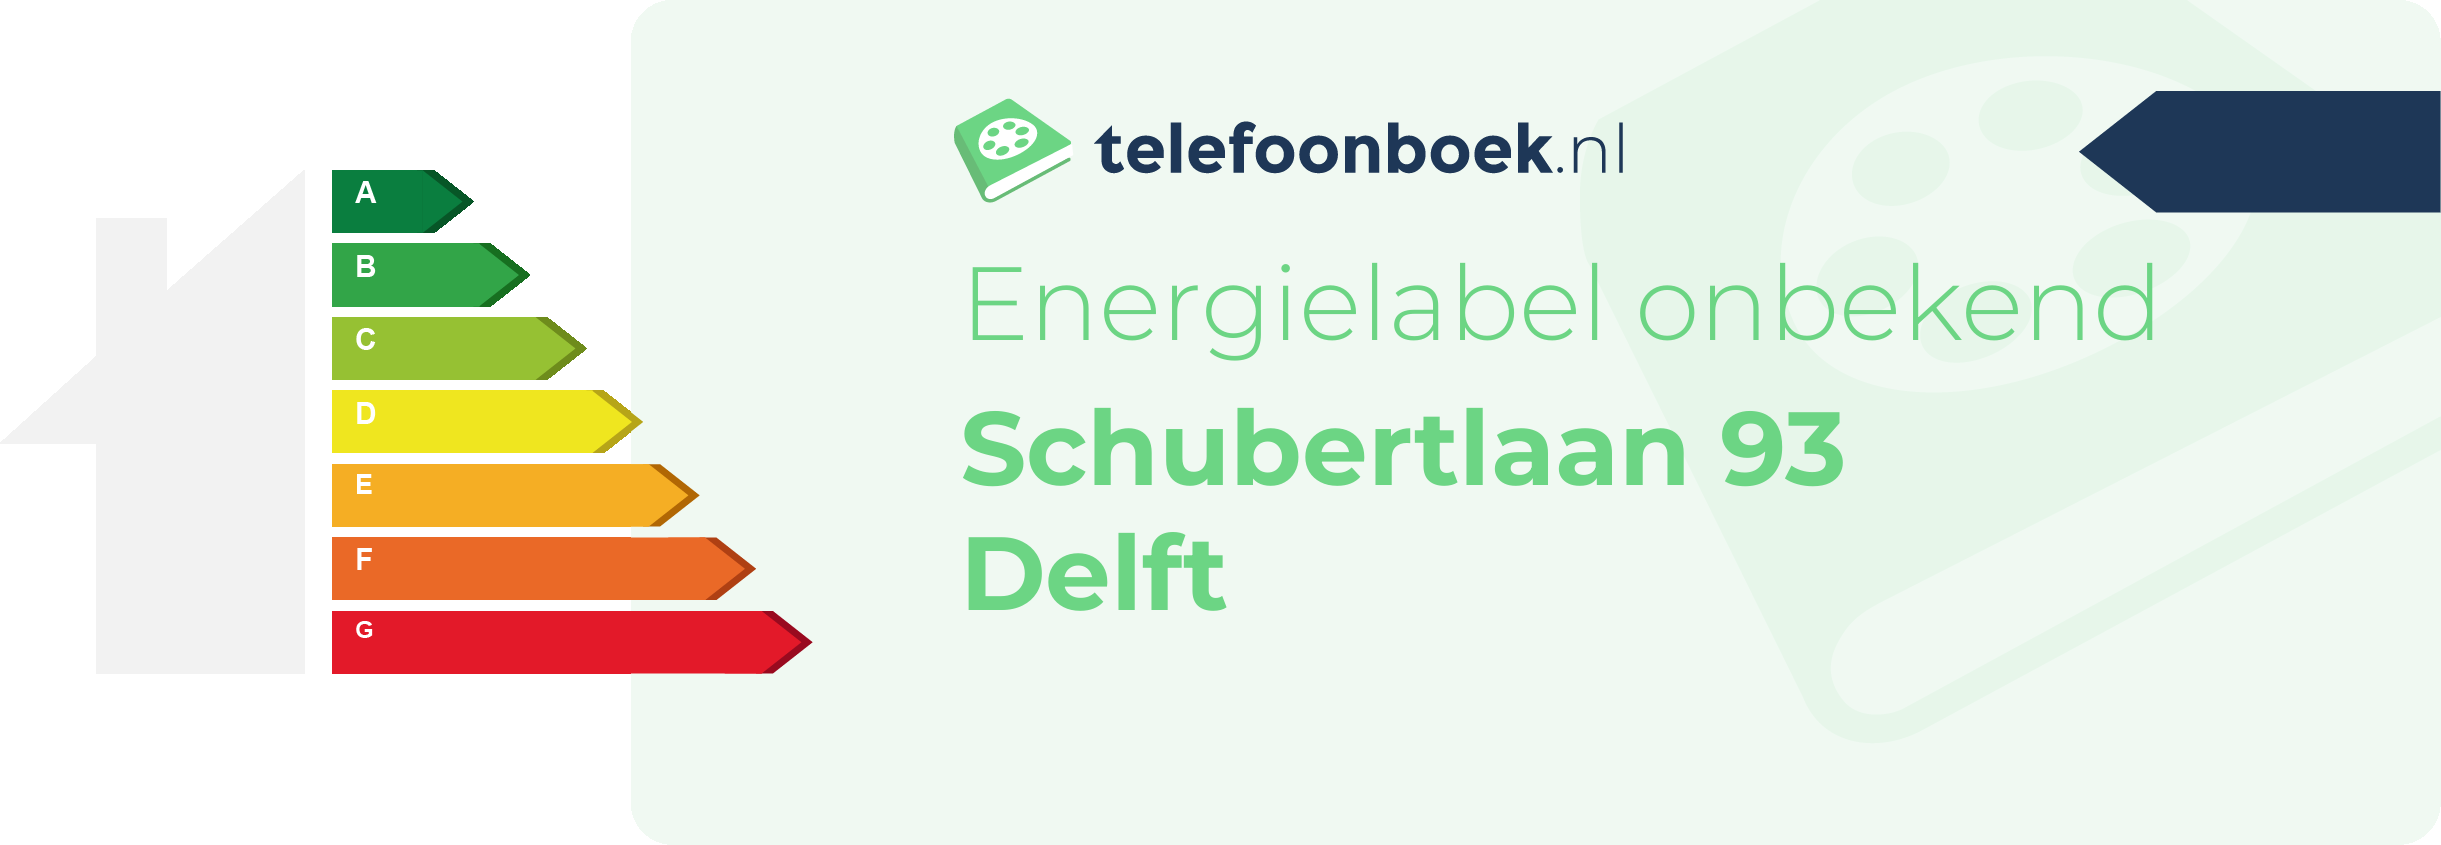 Energielabel Schubertlaan 93 Delft